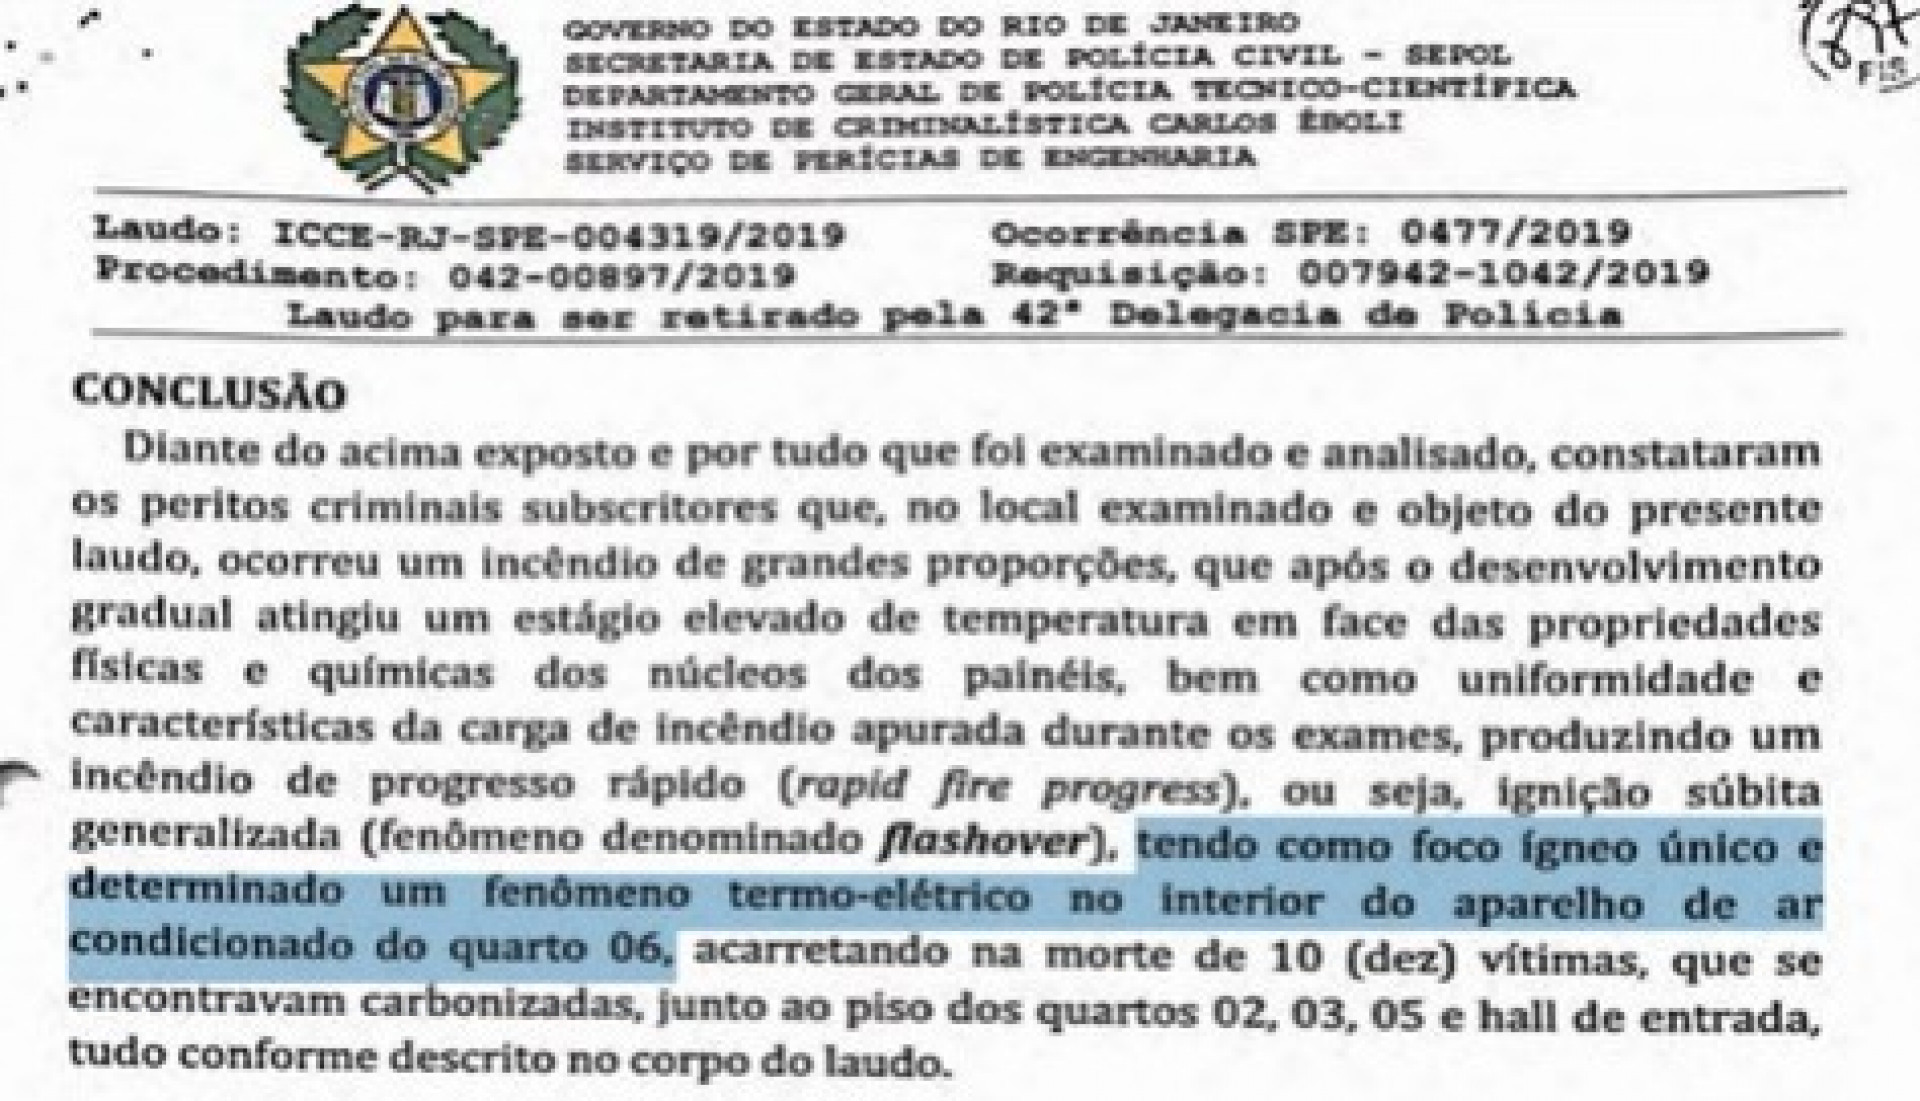 Laudo concluiu que a causa do incêndio partiu de um problema no interior do aparelho de ar-condicionado - Foto: Reprodução/Flamengo